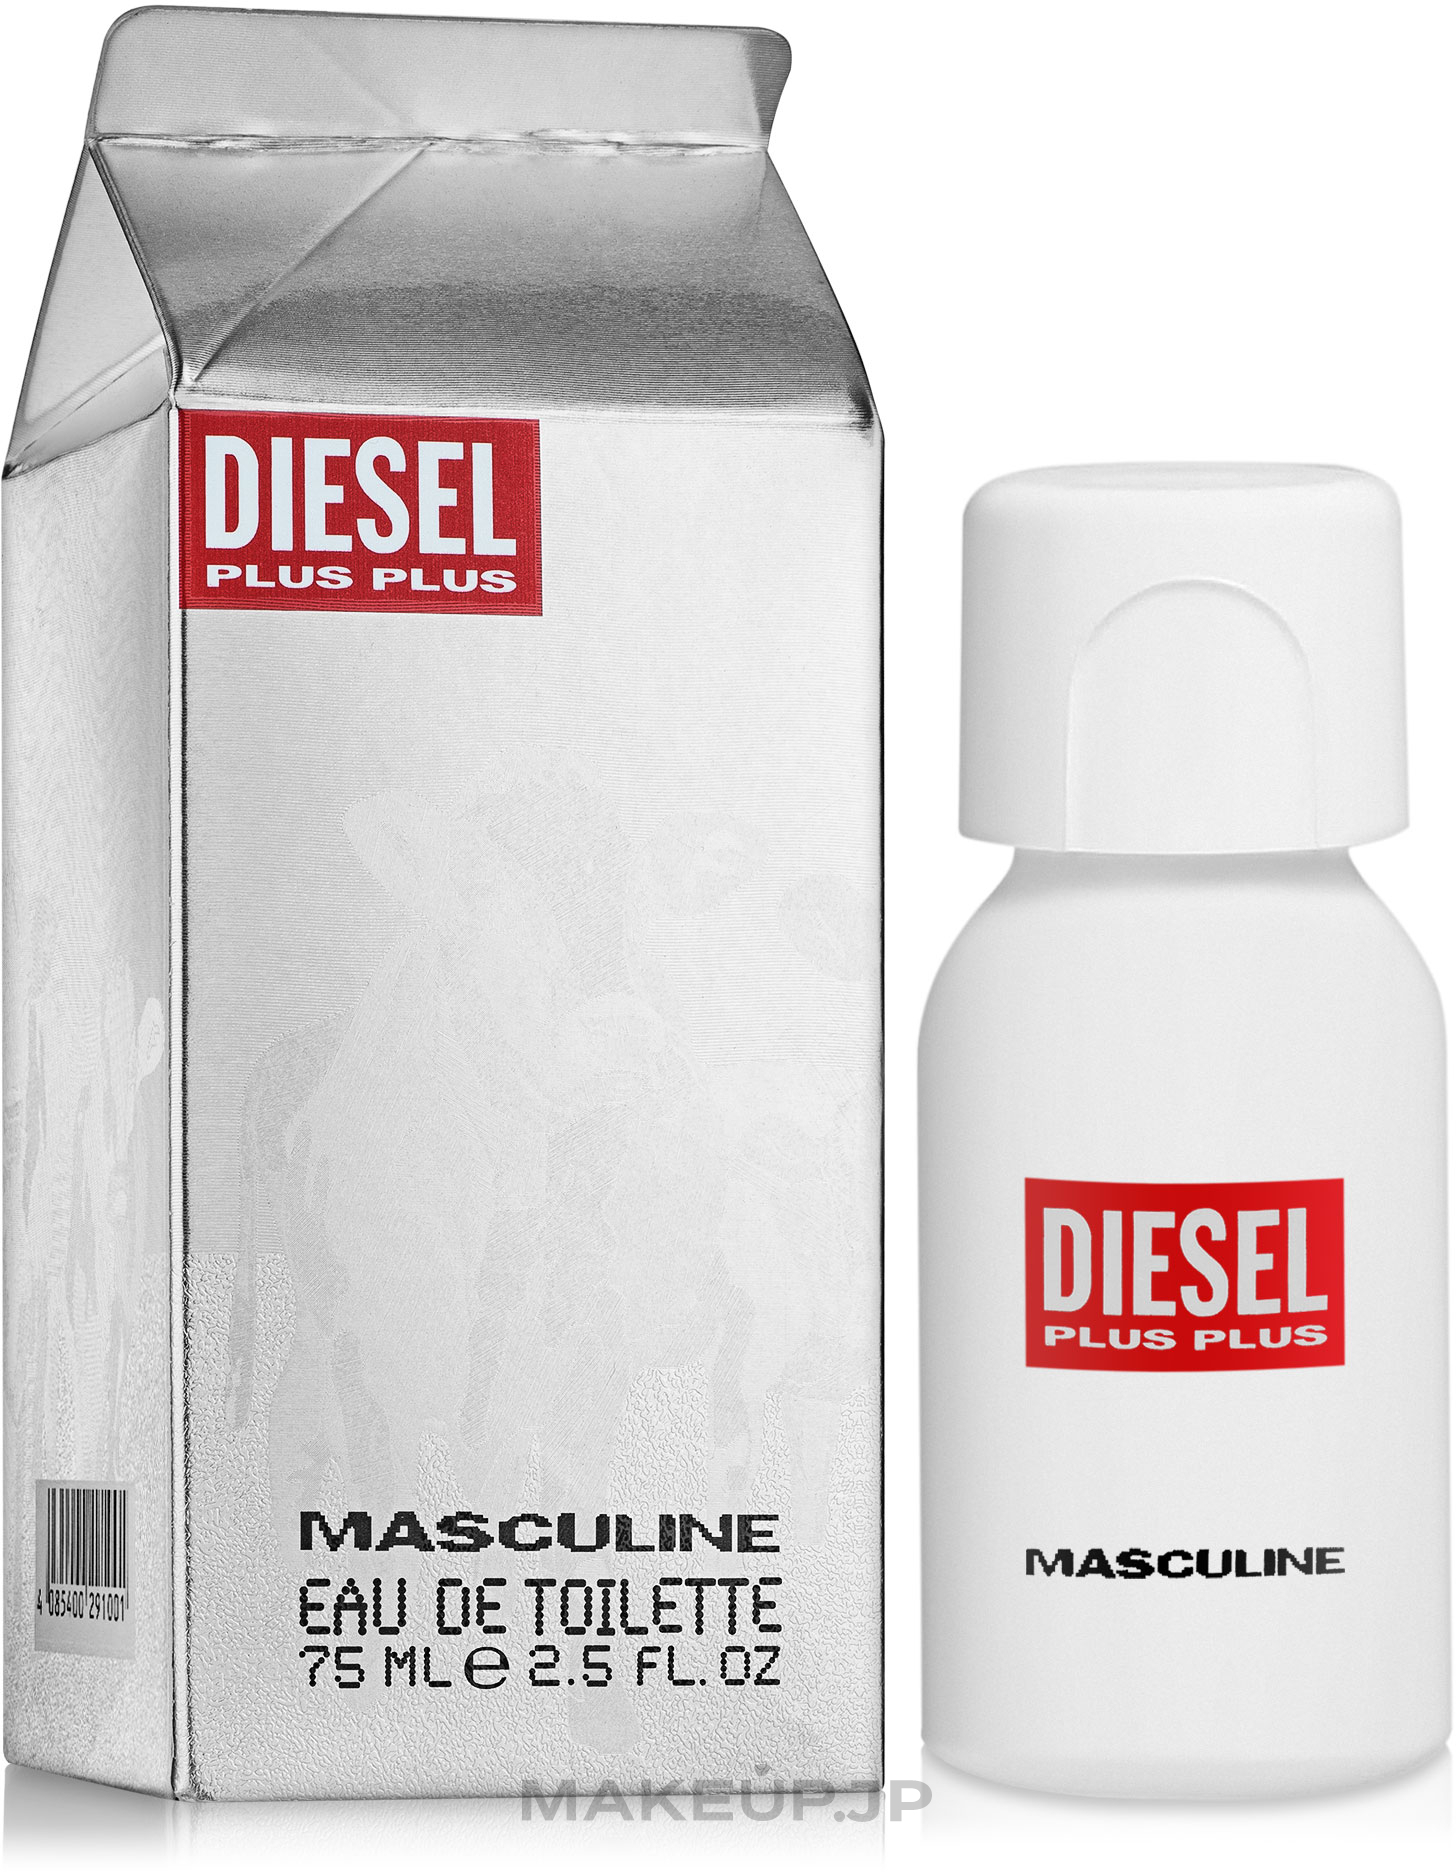 Diesel Plus Plus Masculine - Eau de Toilette — photo 75 ml